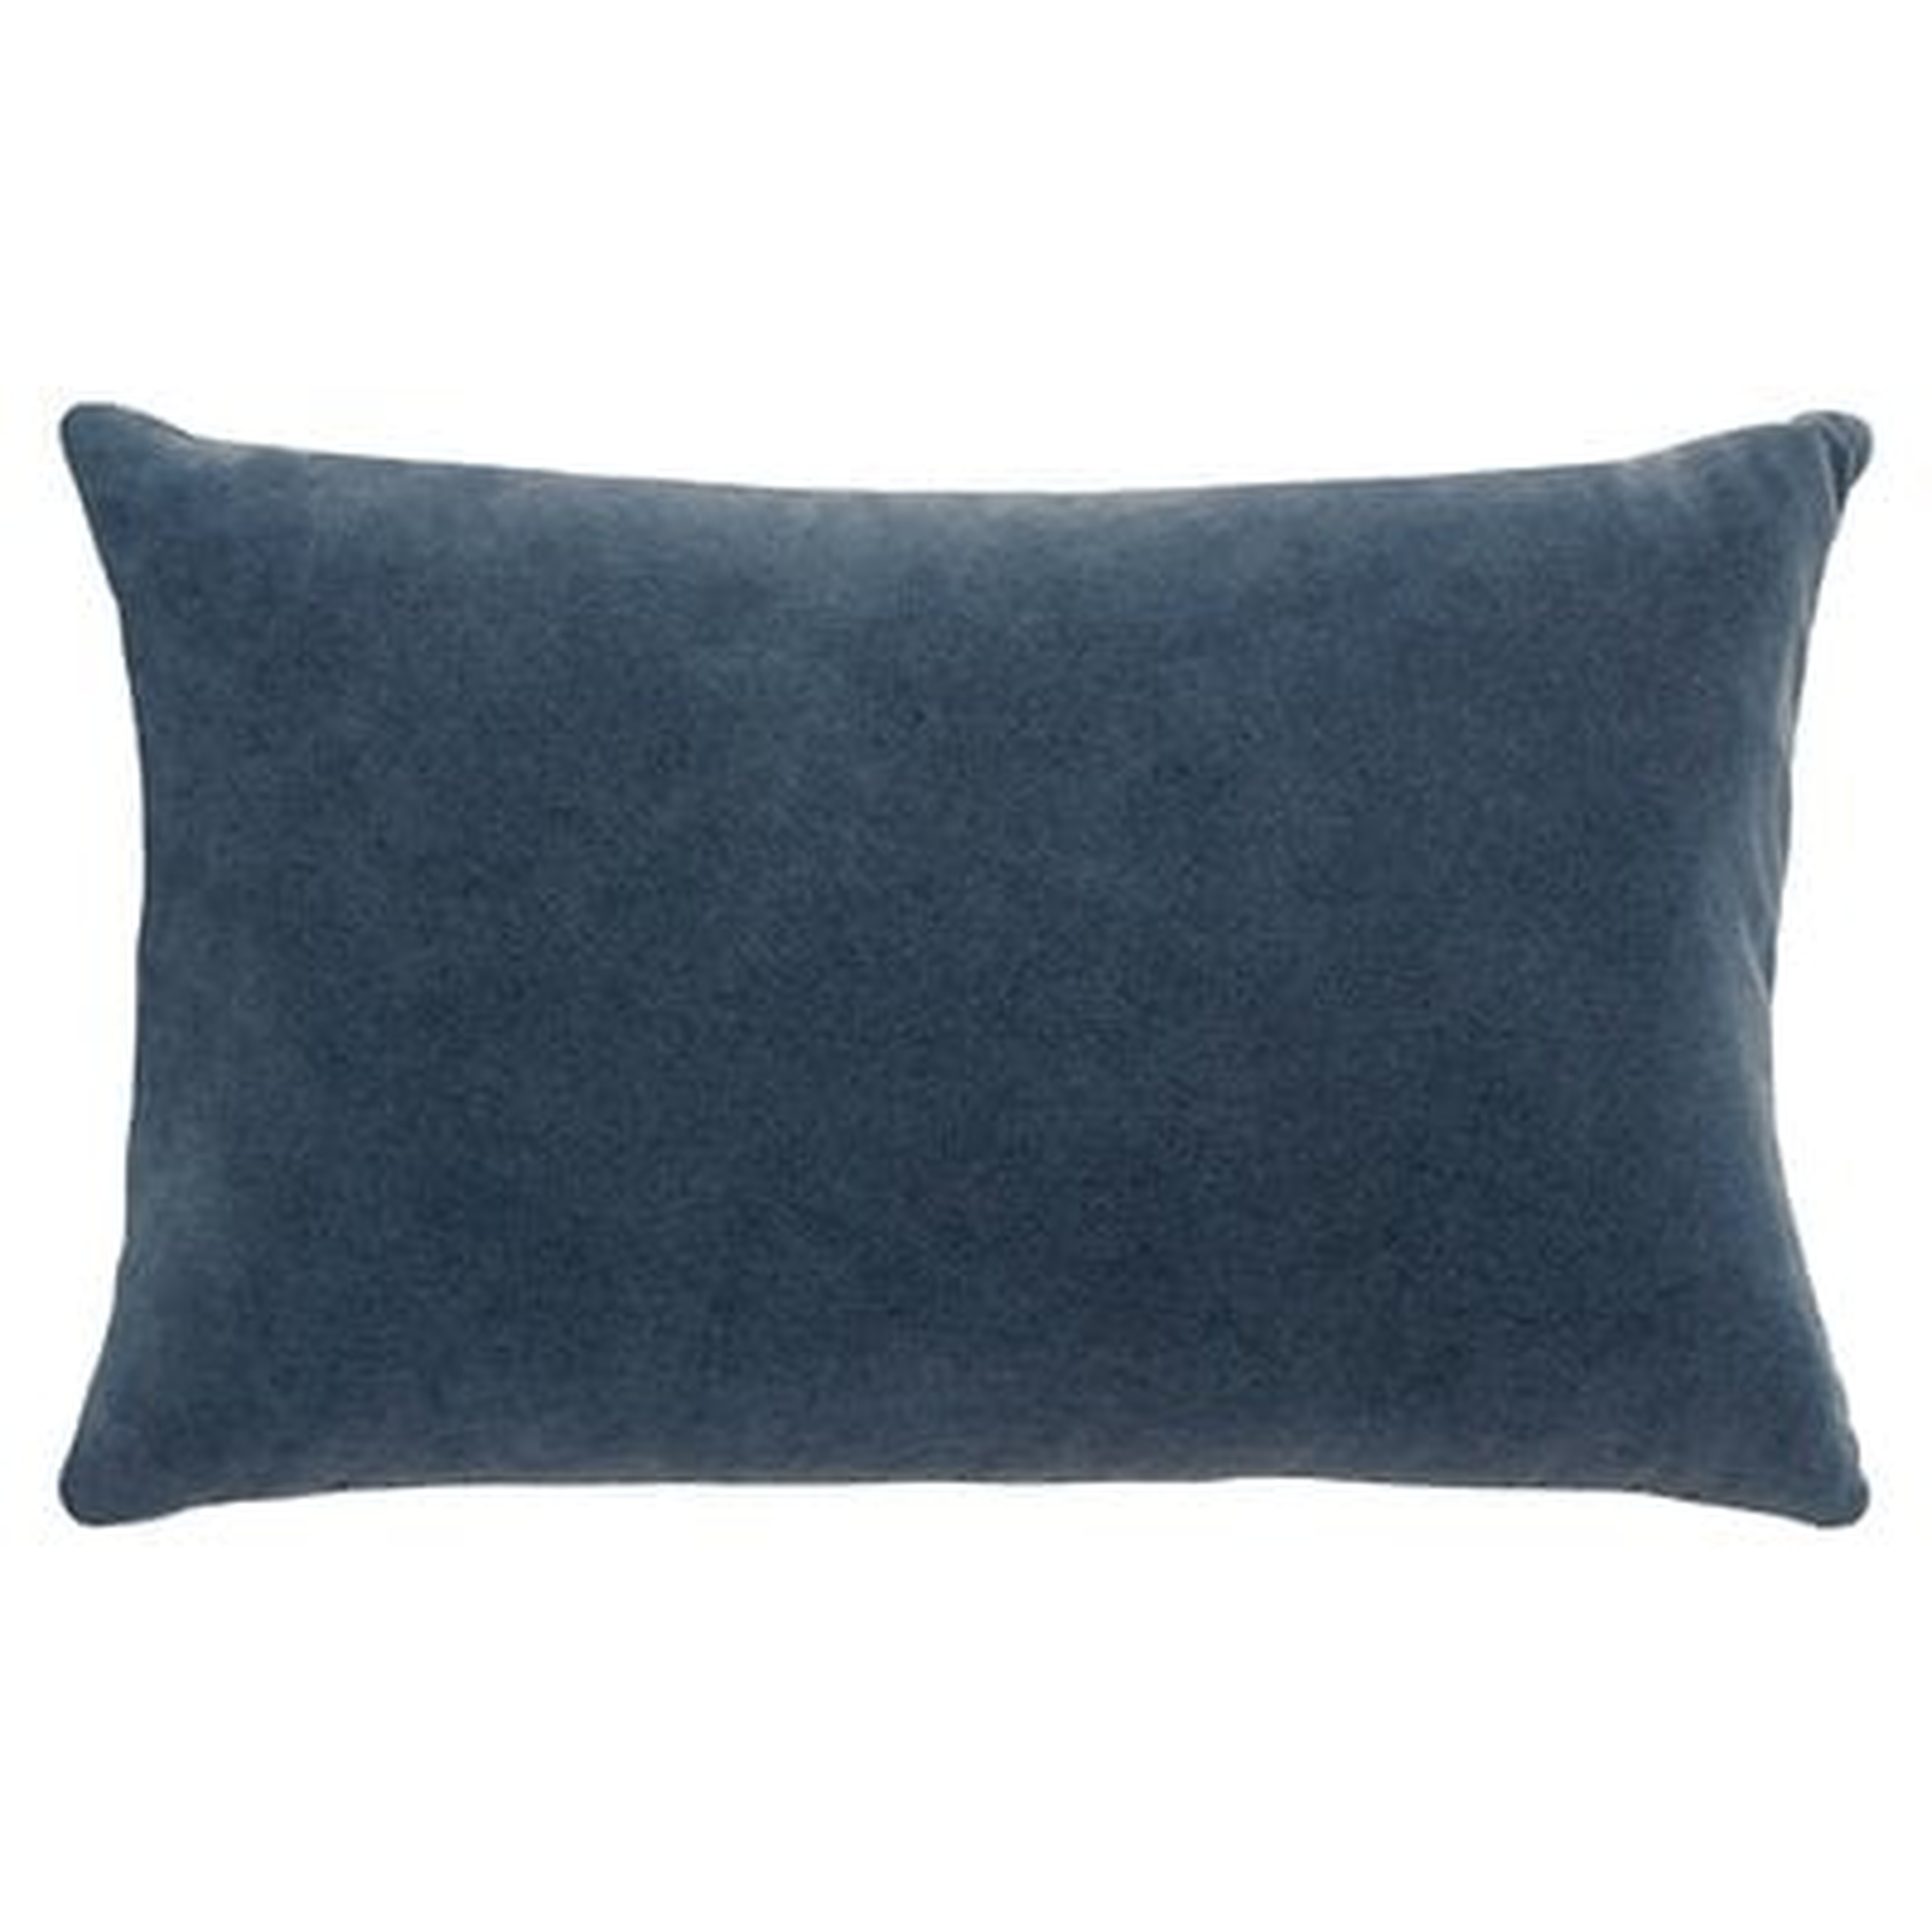 French Connection Kerensa Decorative Lumbar Pillow in Navy - Wayfair